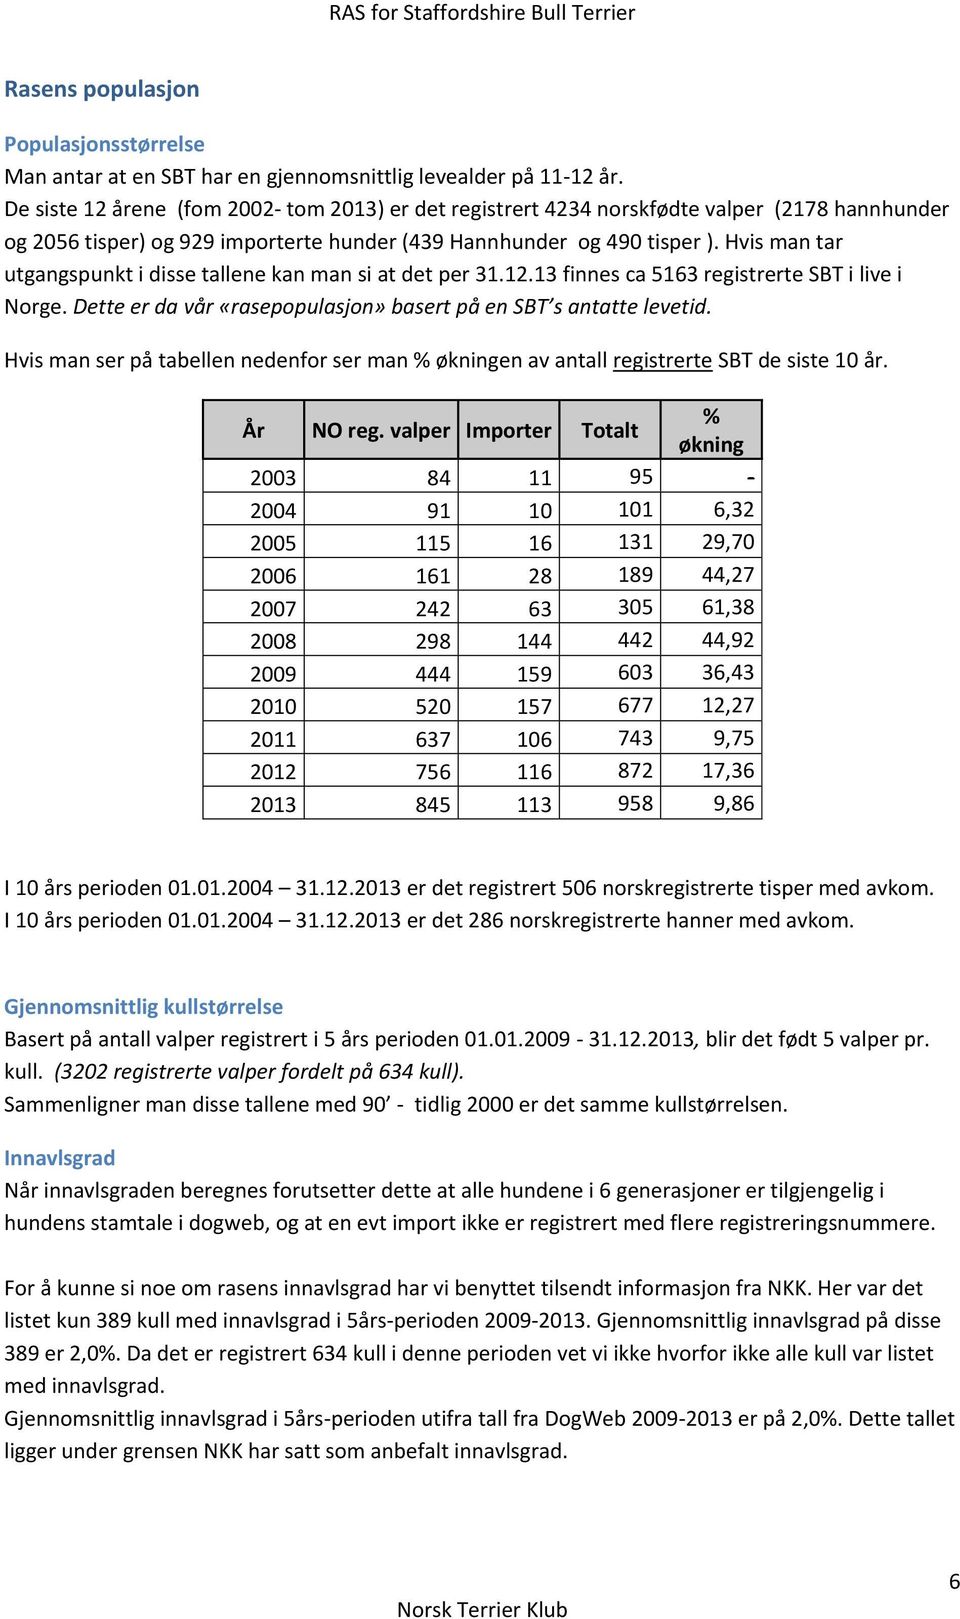 Hvis man tar utgangspunkt i disse tallene kan man si at det per 31.12.13 finnes ca 5163 registrerte SBT i live i Norge. Dette er da vår «rasepopulasjon» basert på en SBT s antatte levetid.